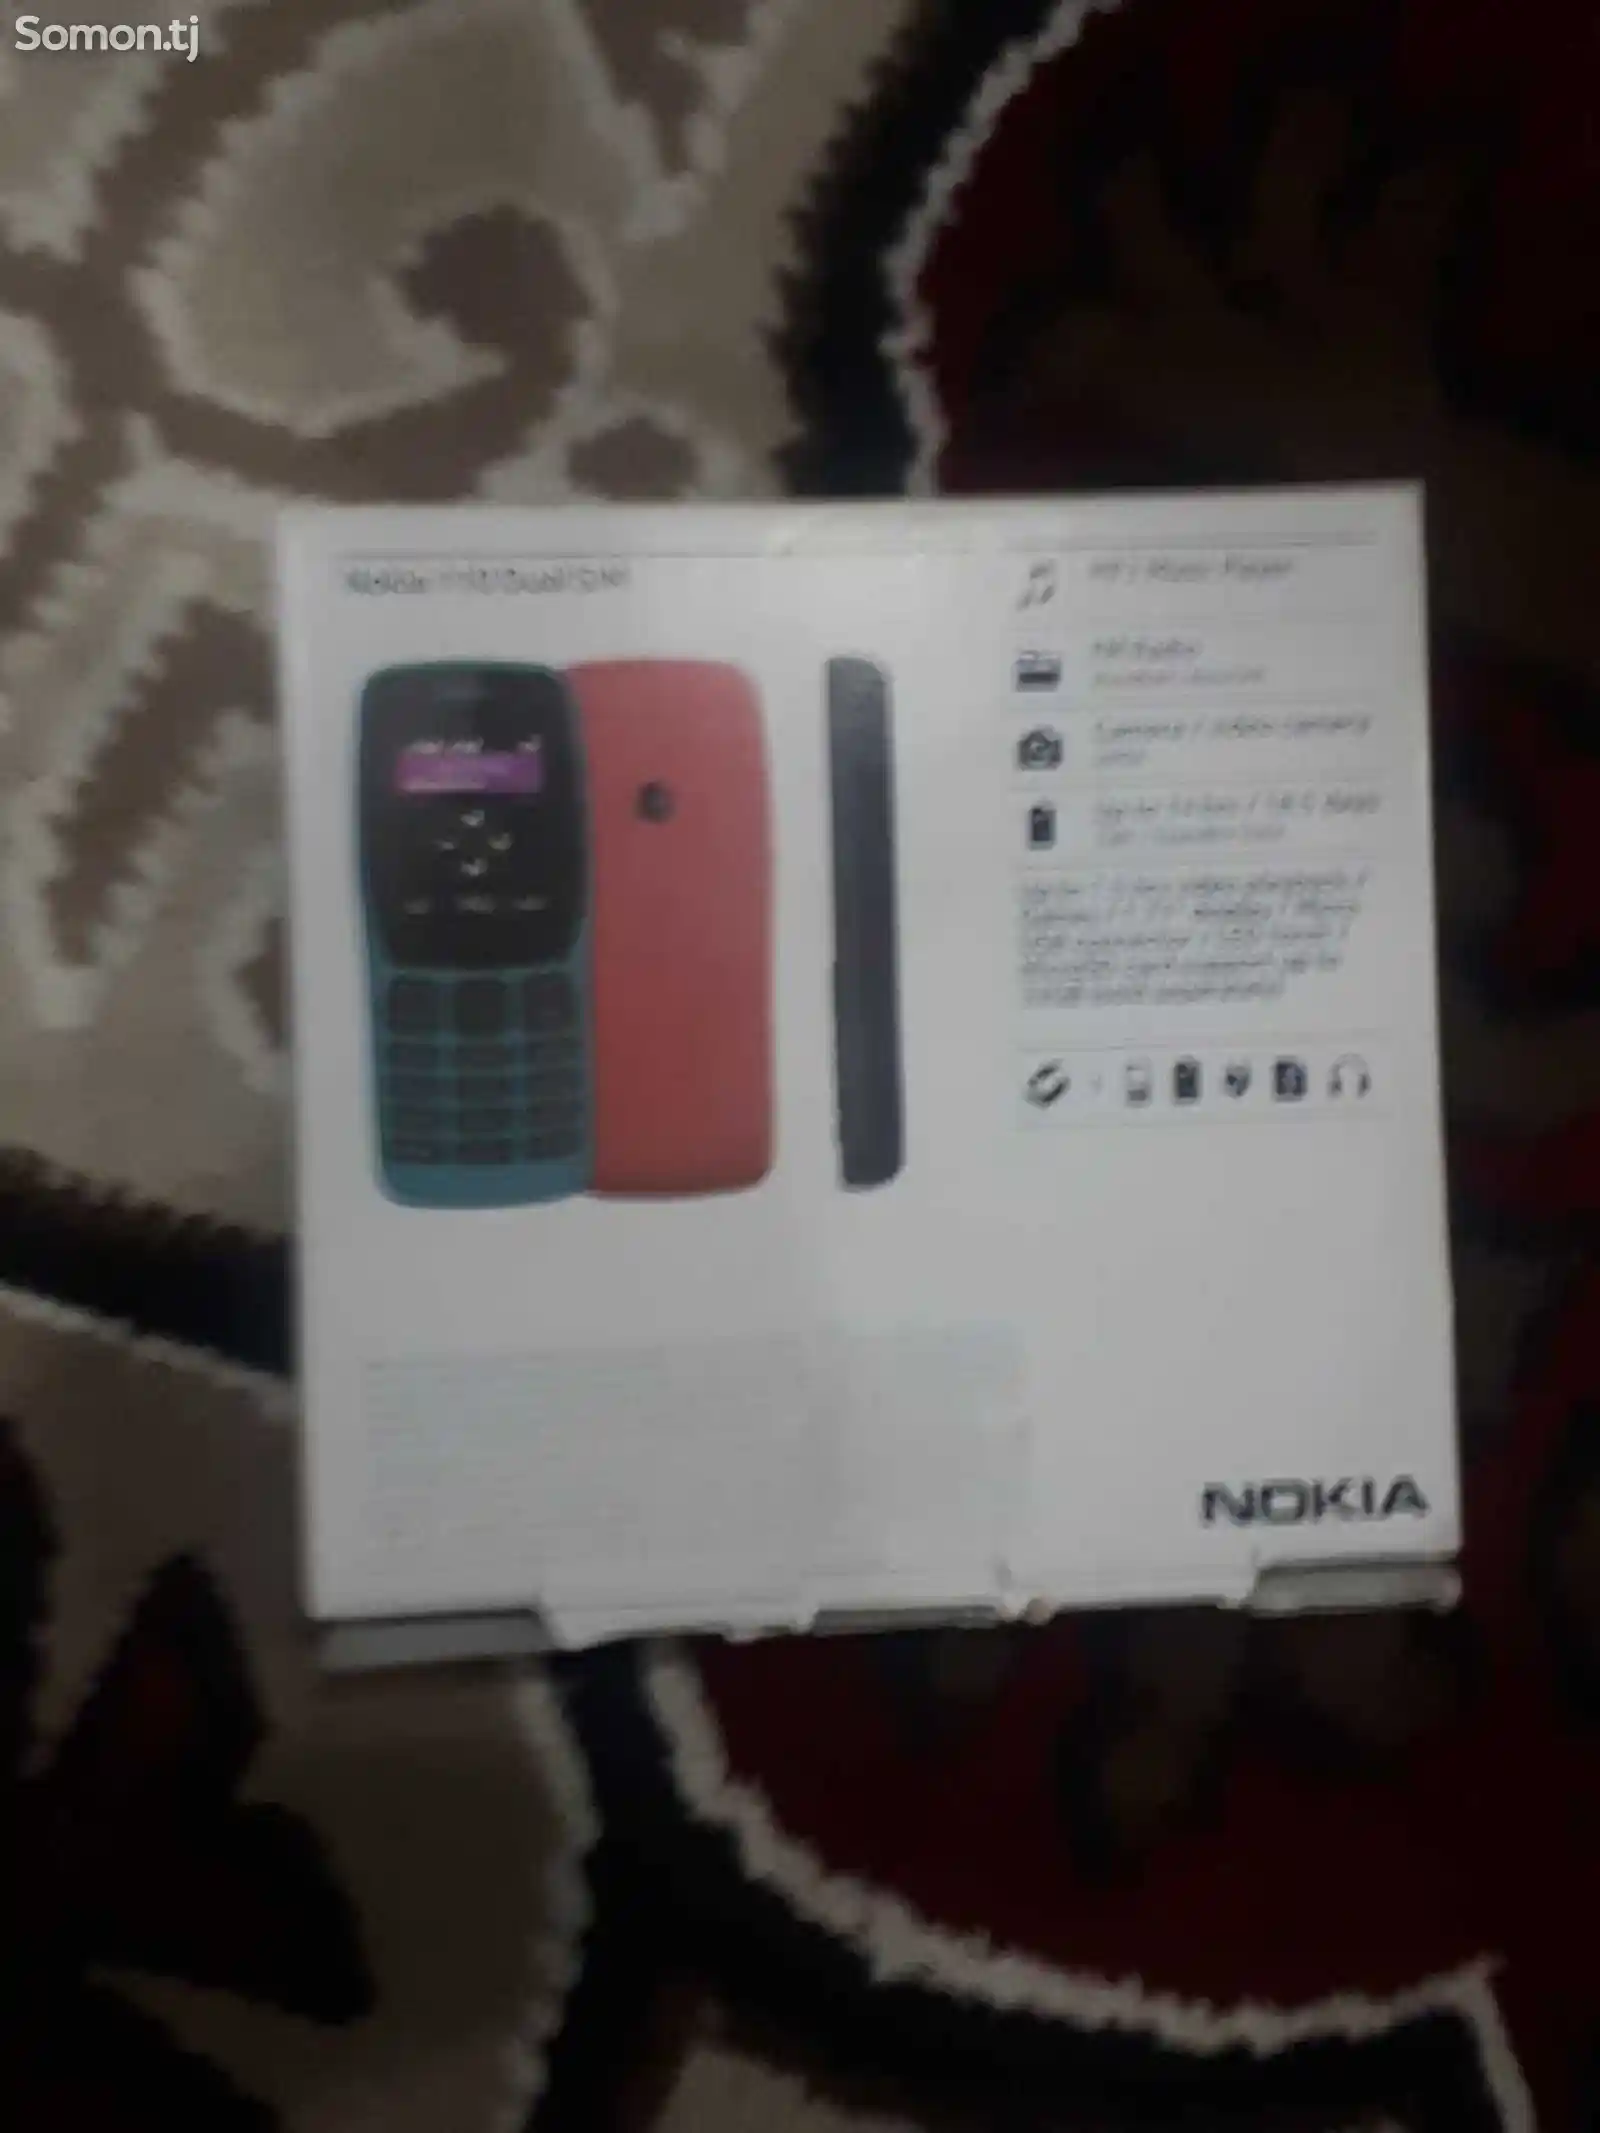 Nokia 110-3